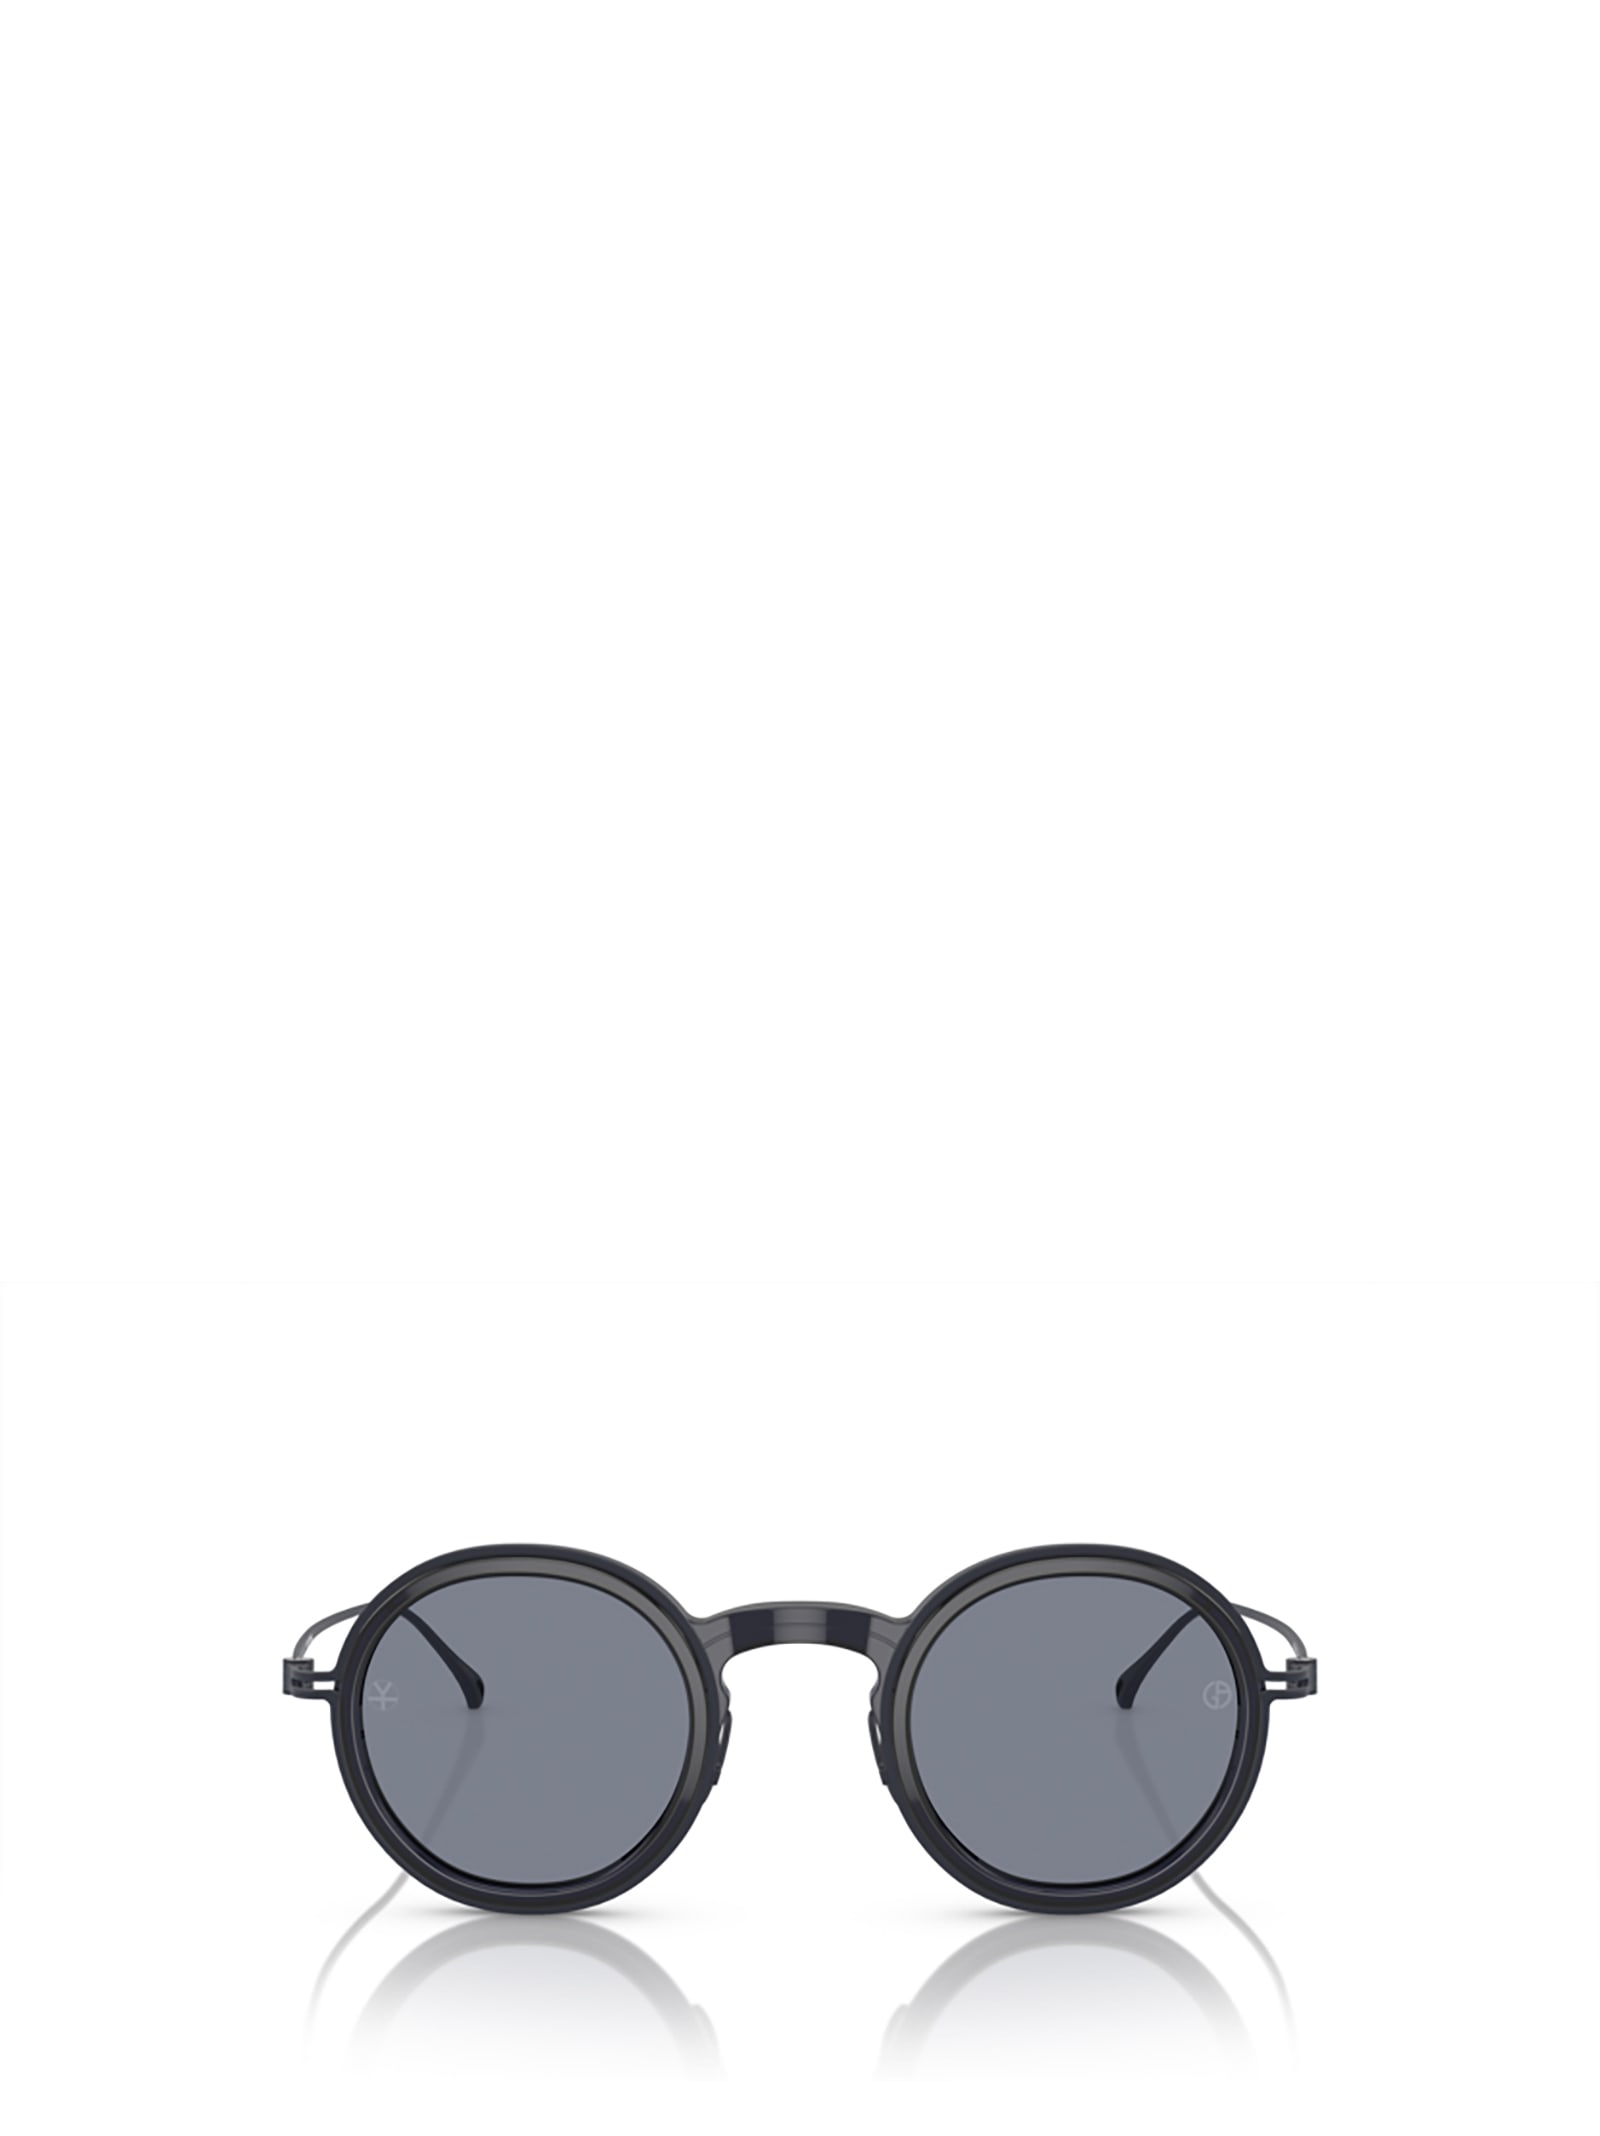 Giorgio Armani Ar6147t Shiny Transparent Blue Sunglasses